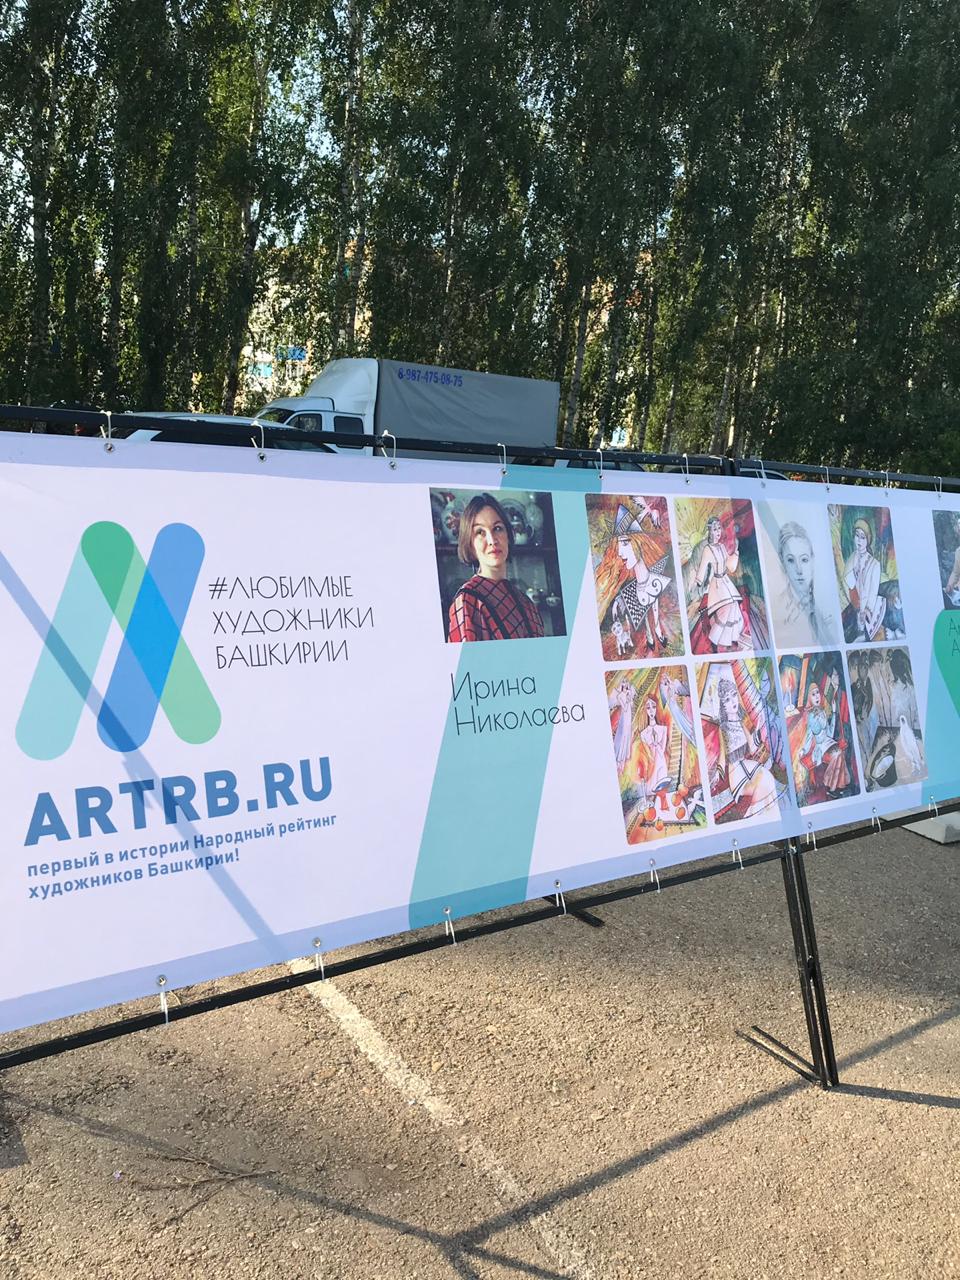 Работы башкирских художников представили на концерте в селе Кандры